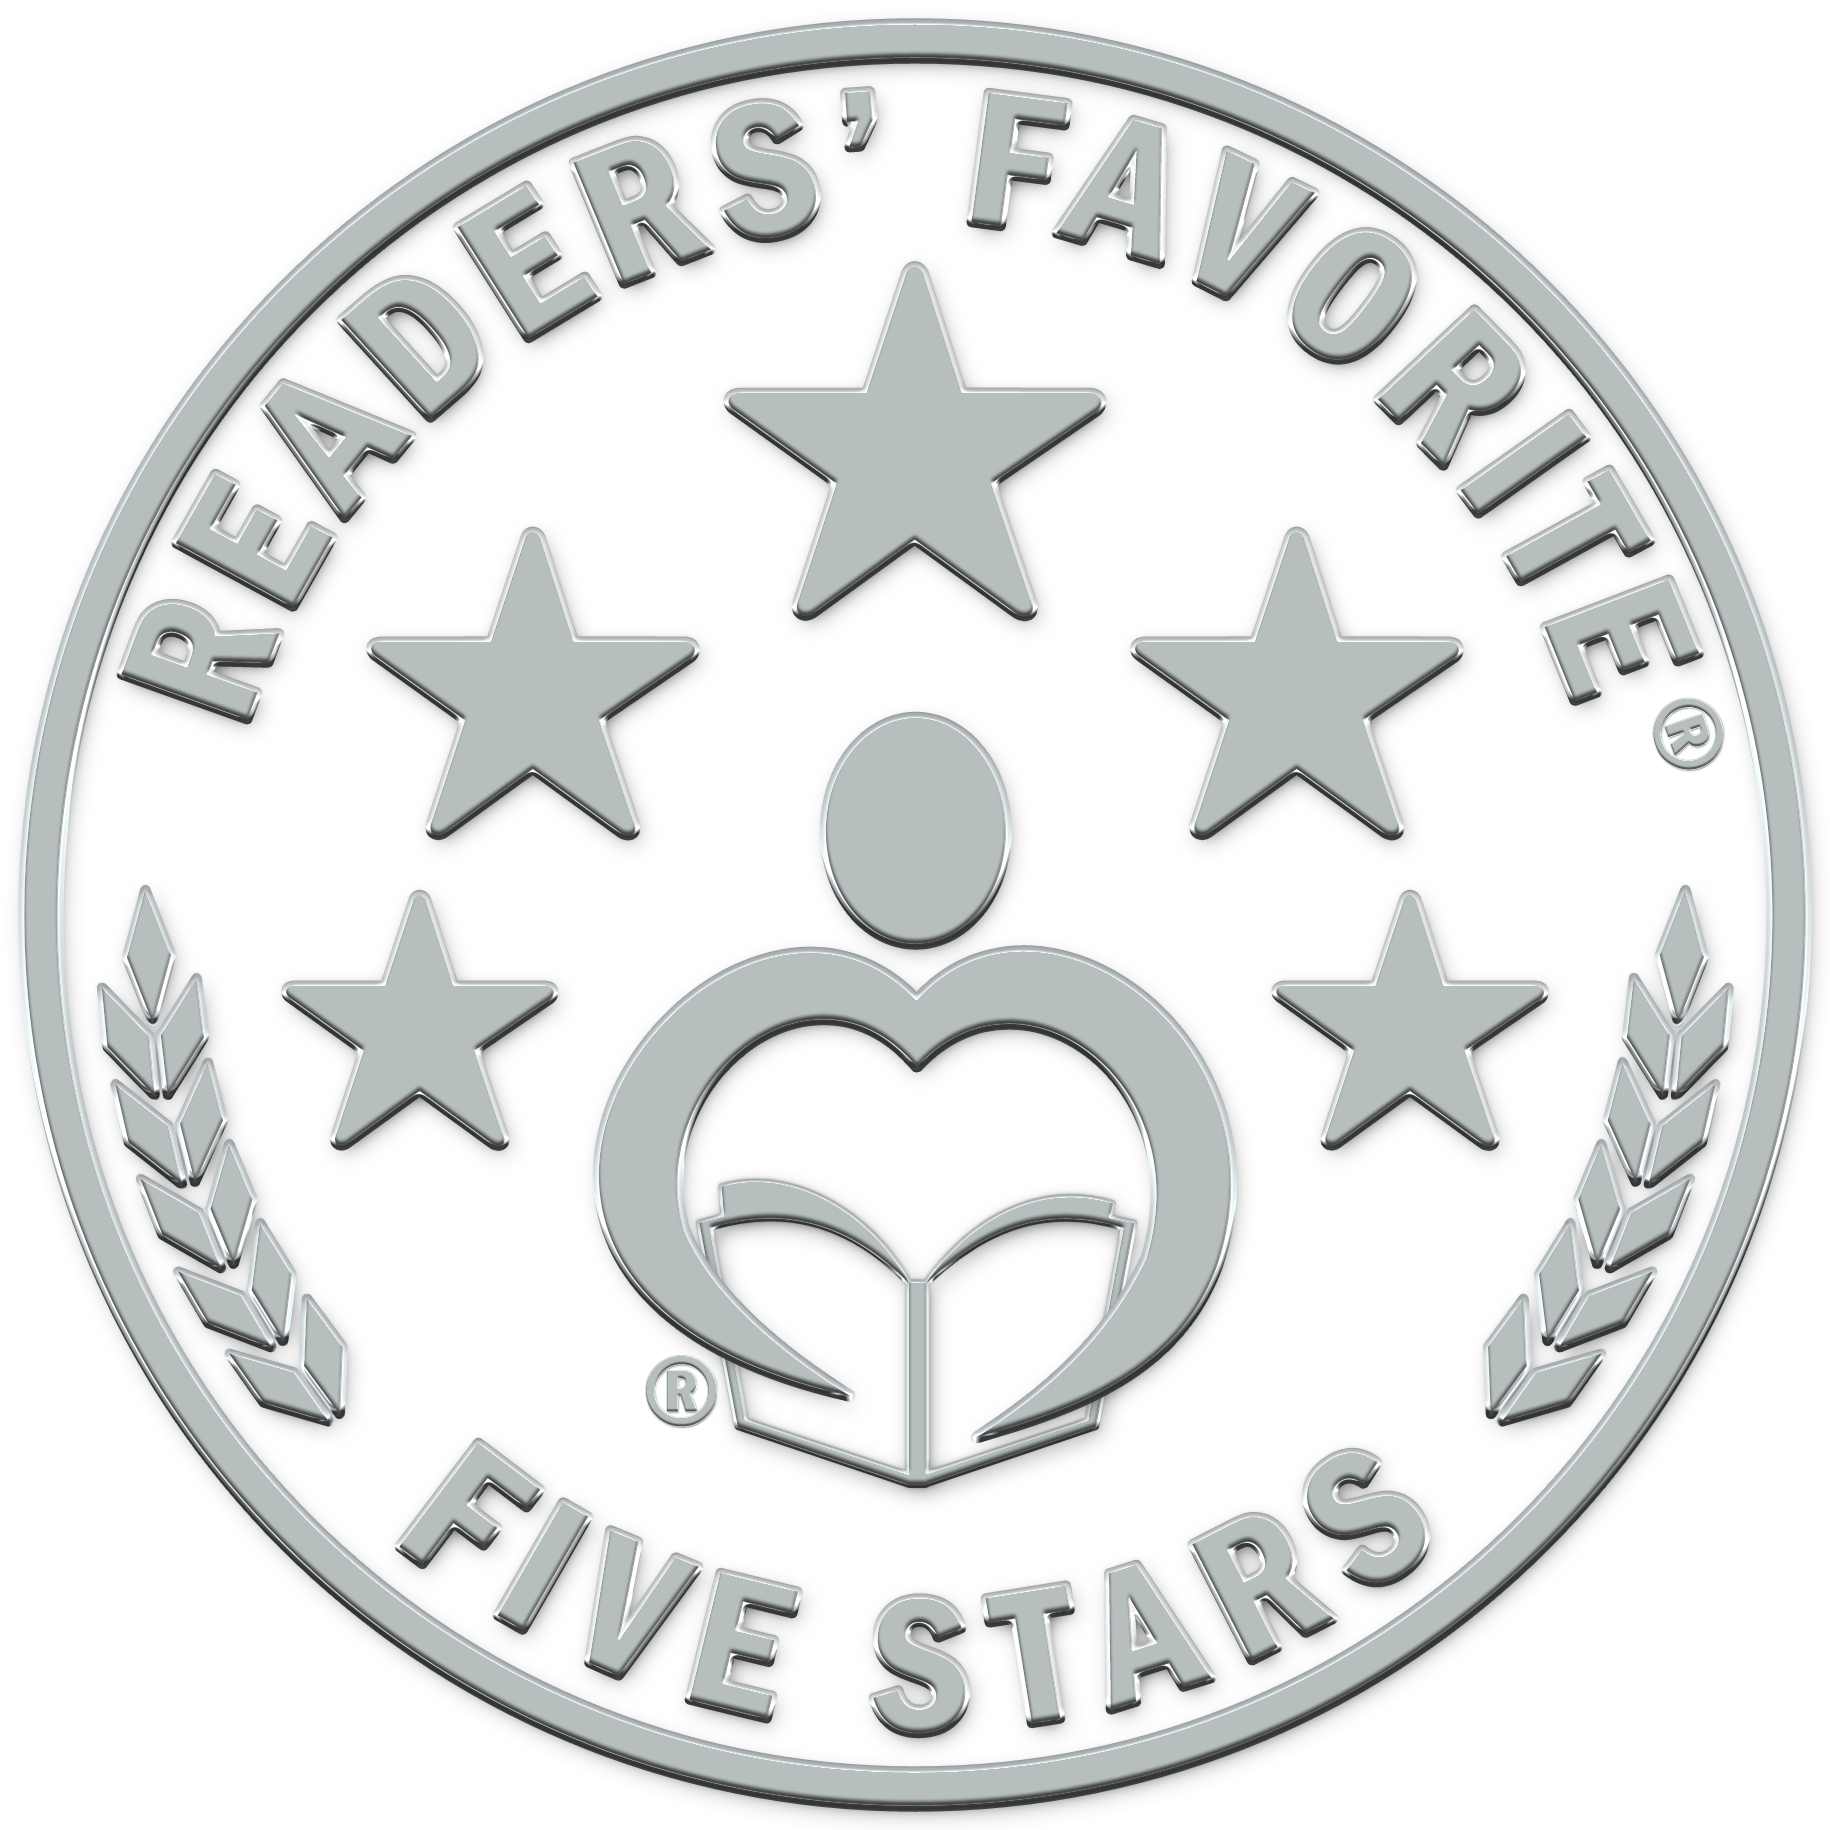 Readers' Favorite Award - Five Stars